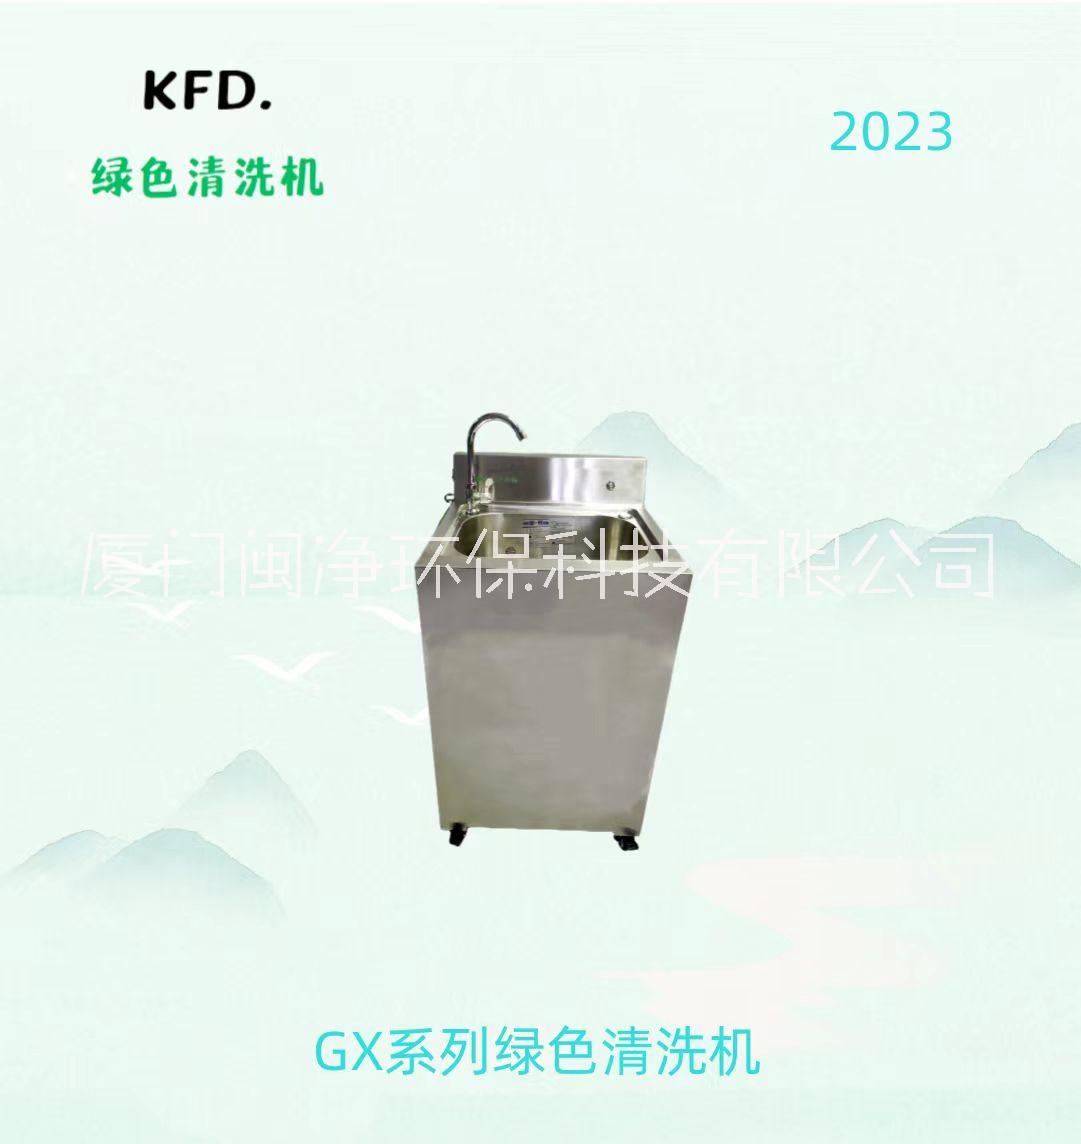 GX清洗机图片